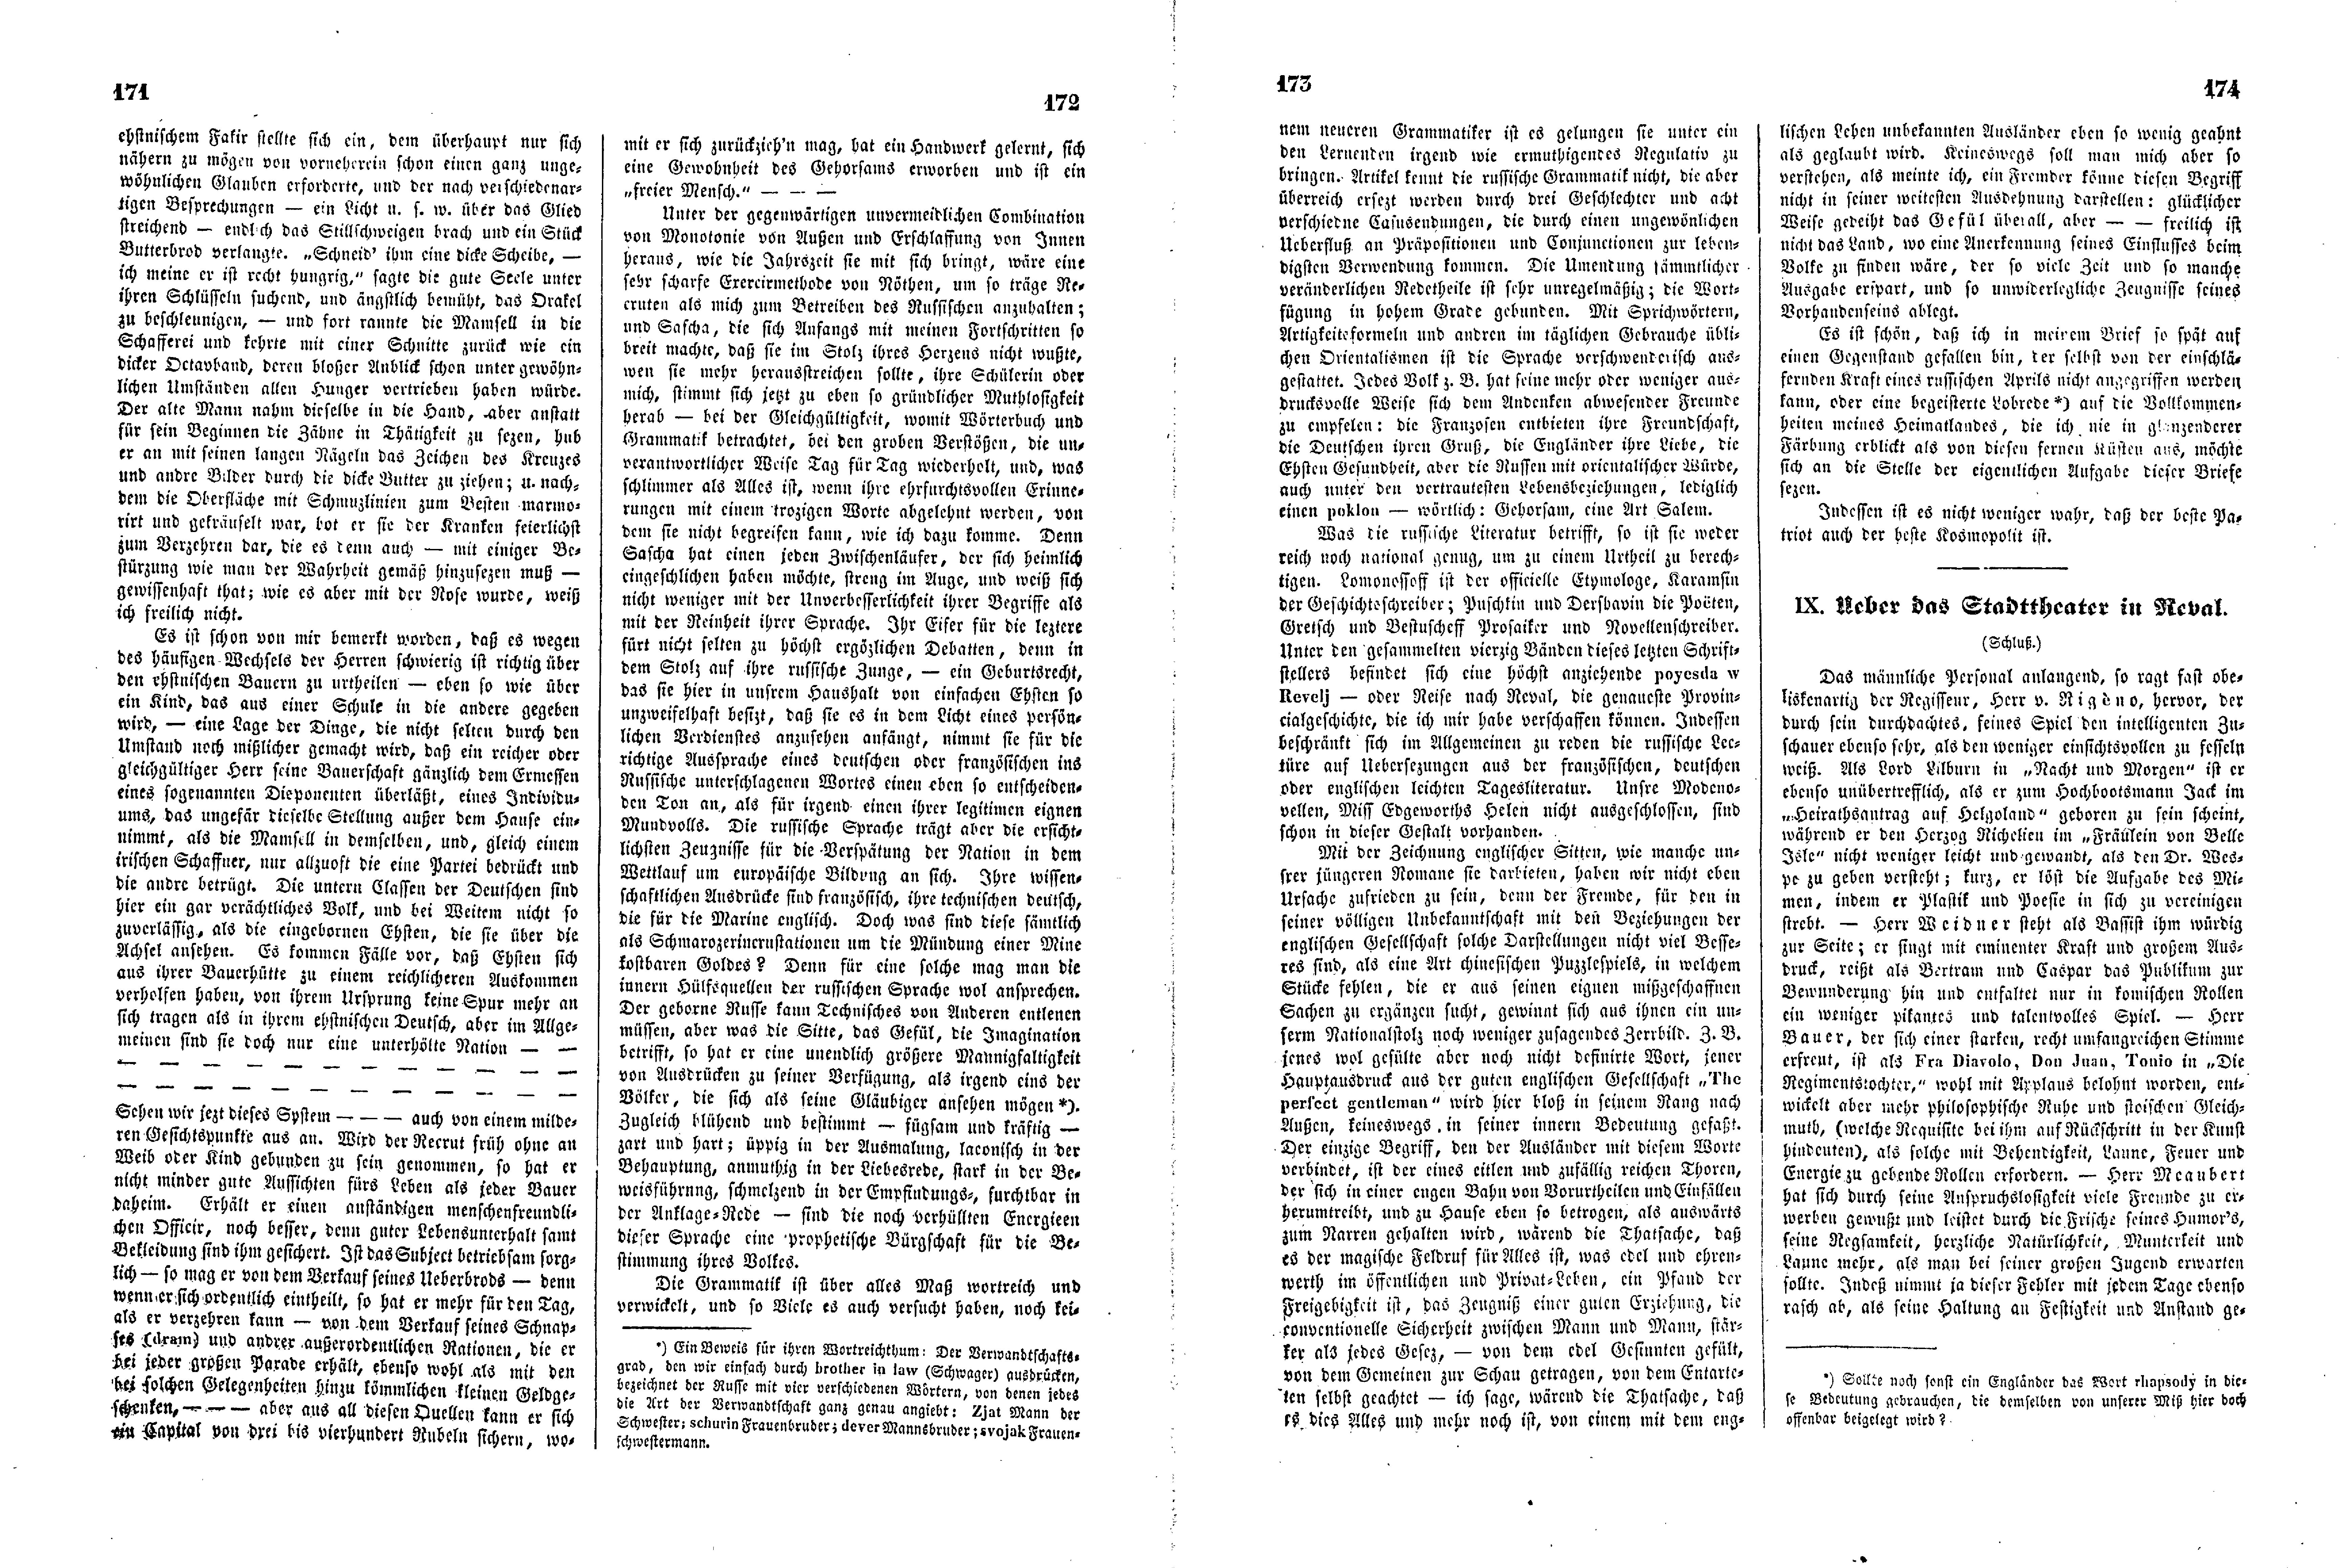 Das Inland [11] (1846) | 48. (171-174) Põhitekst